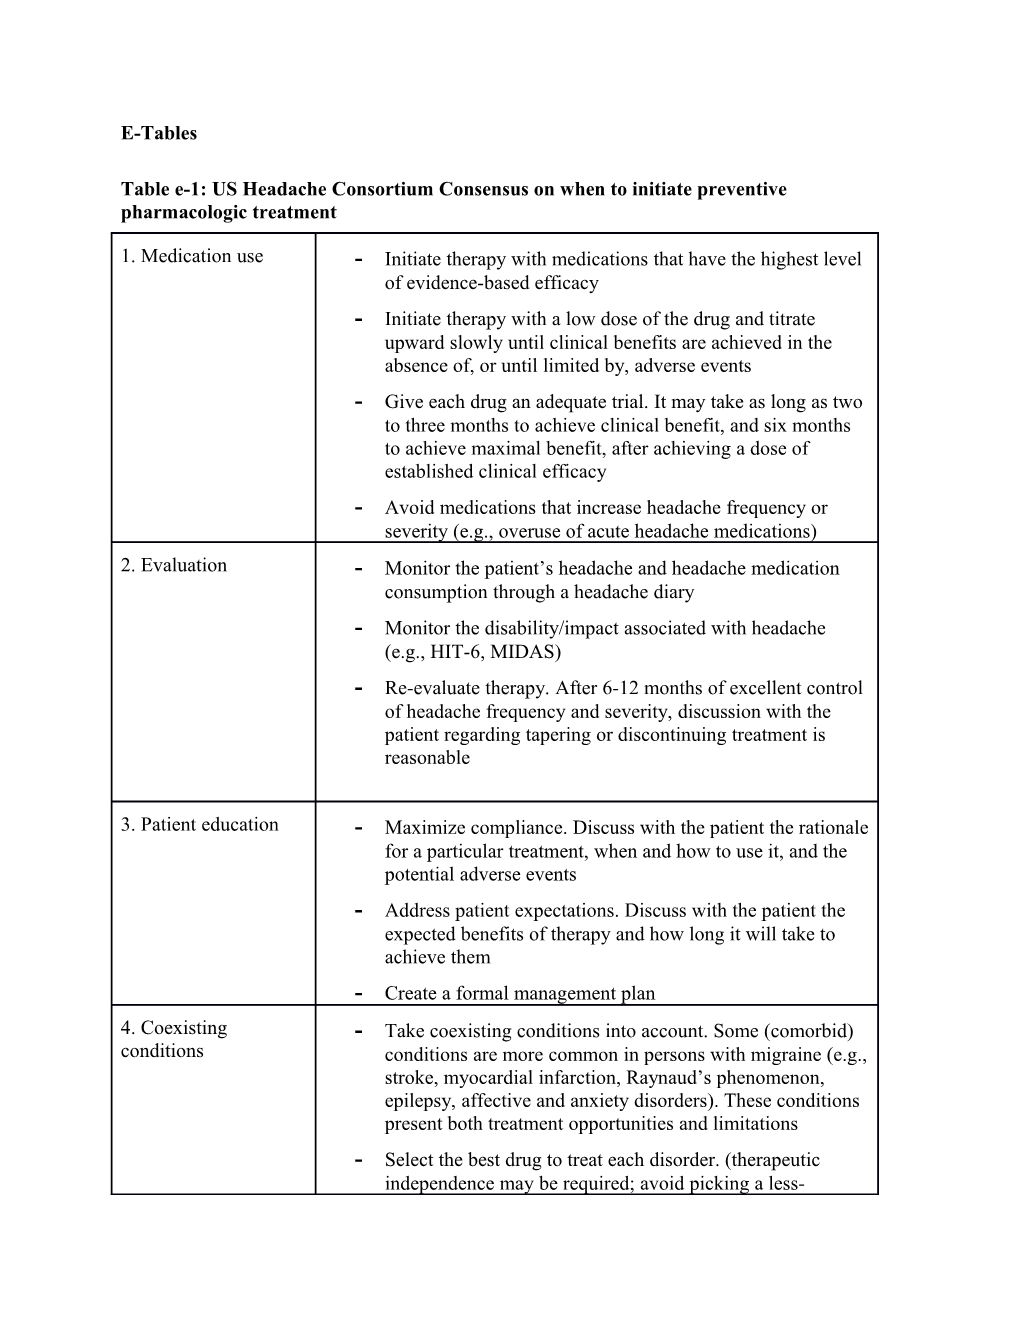 Table E-1: US Headache Consortium Consensus on When to Initiate Preventive Pharmacologic